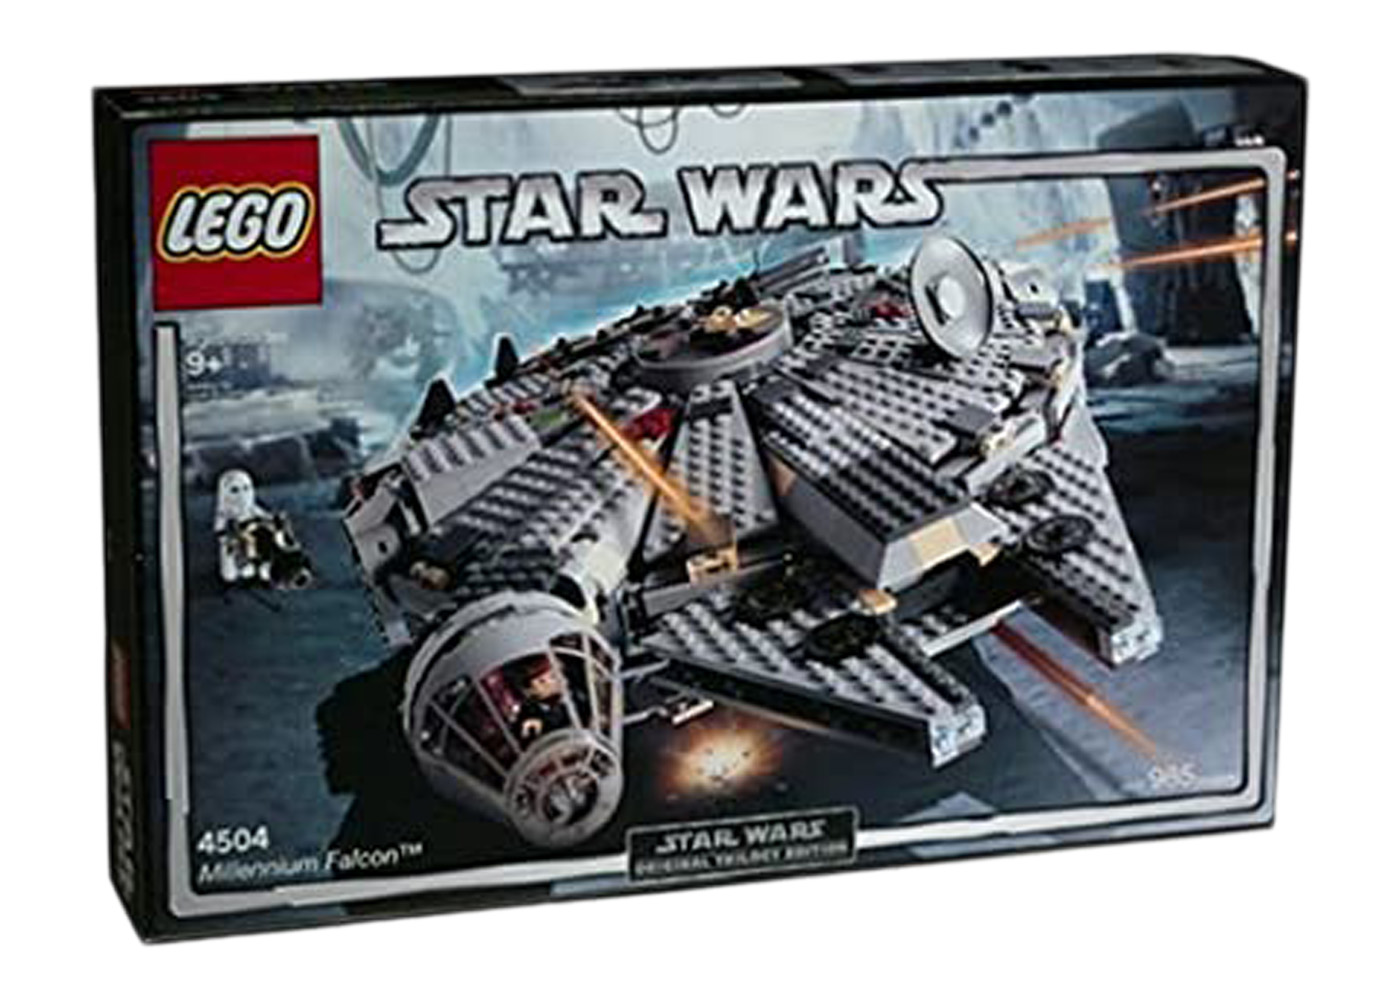 LEGO Star Wars Millennium Falcon Set 4504 - US